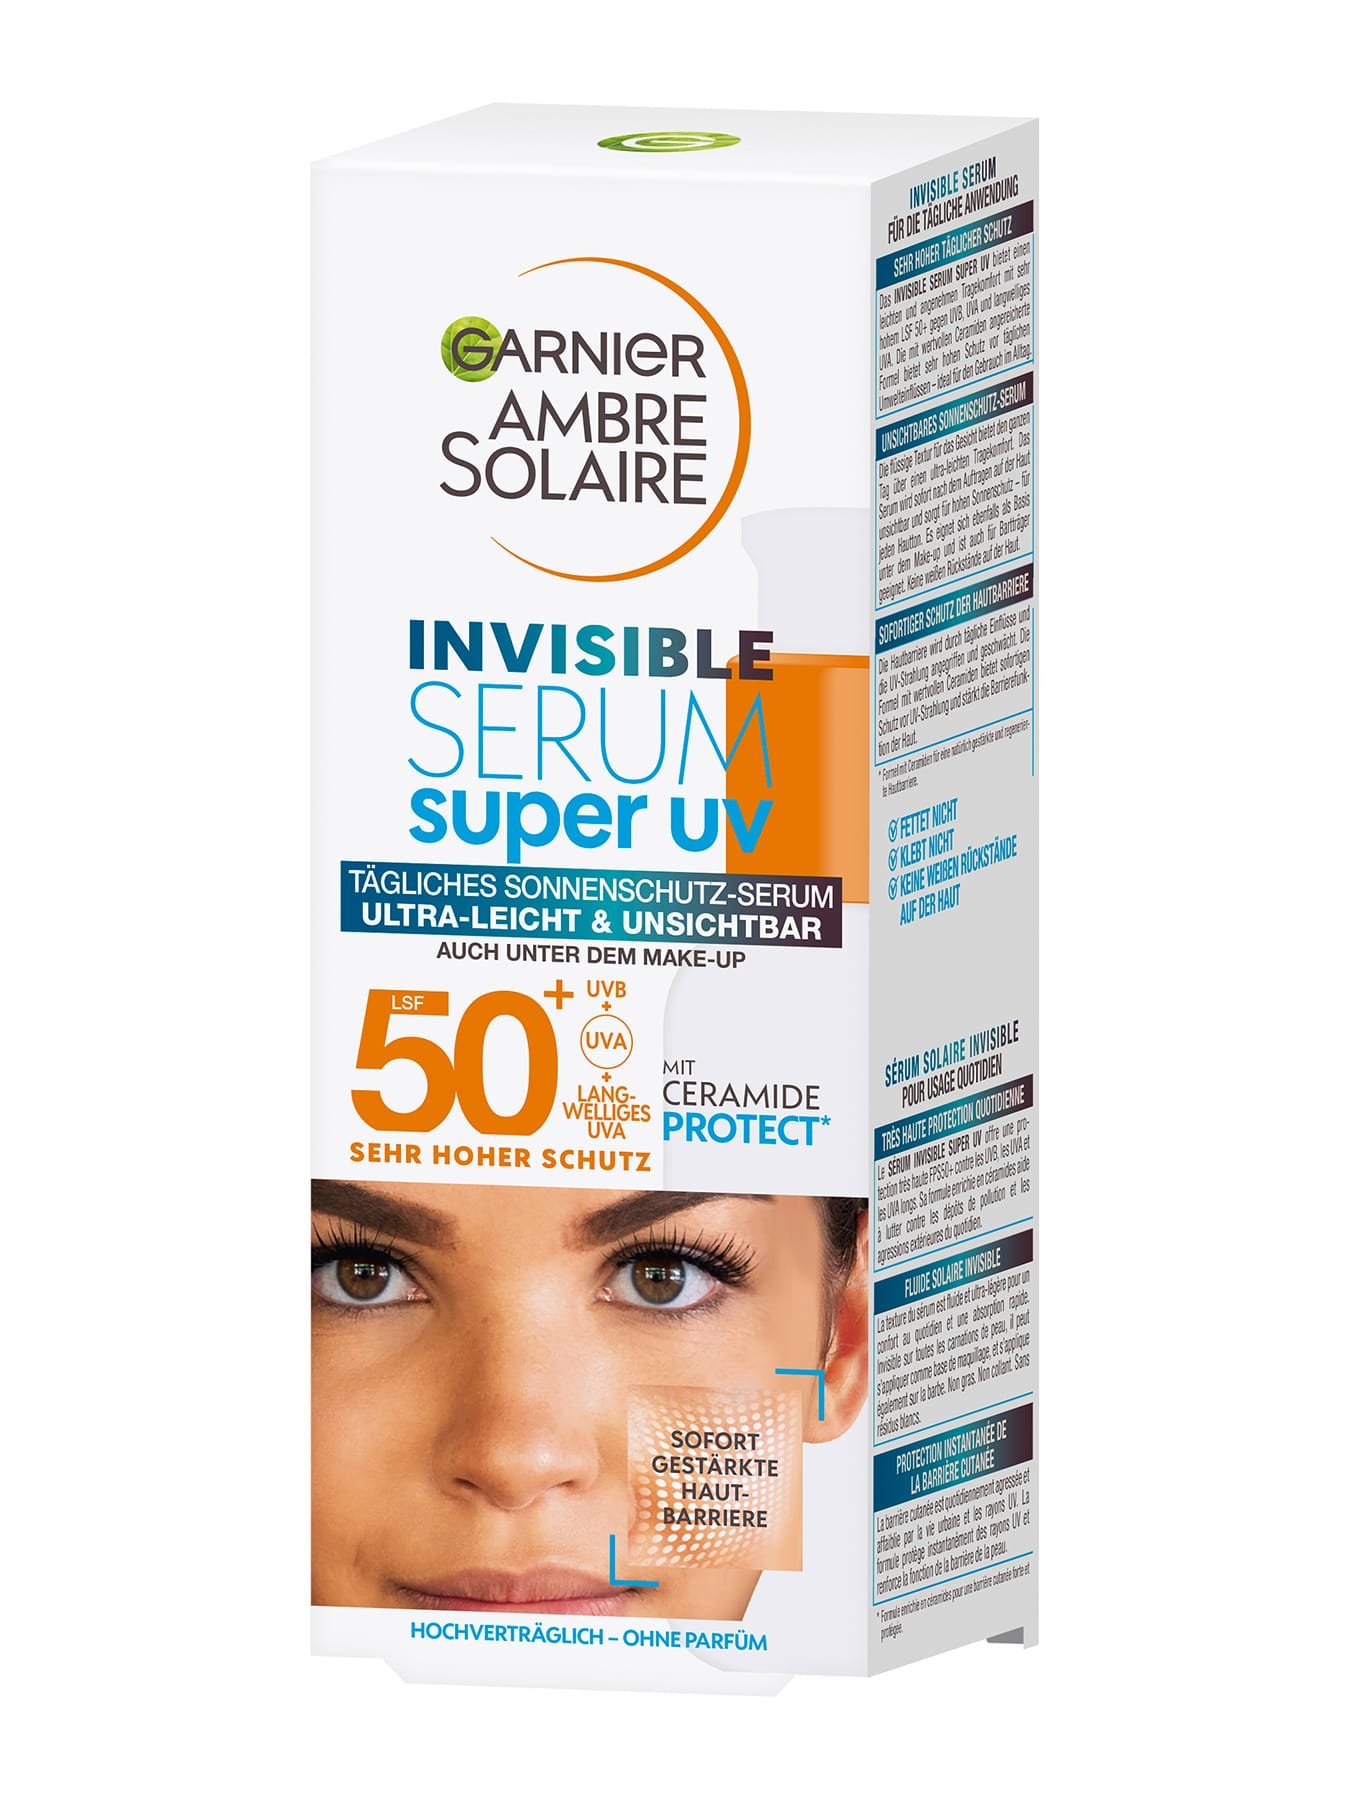 Invisible Serum Super UV Sonnenschutz-Serum LSF 50+ Verpackung schräg von vorn